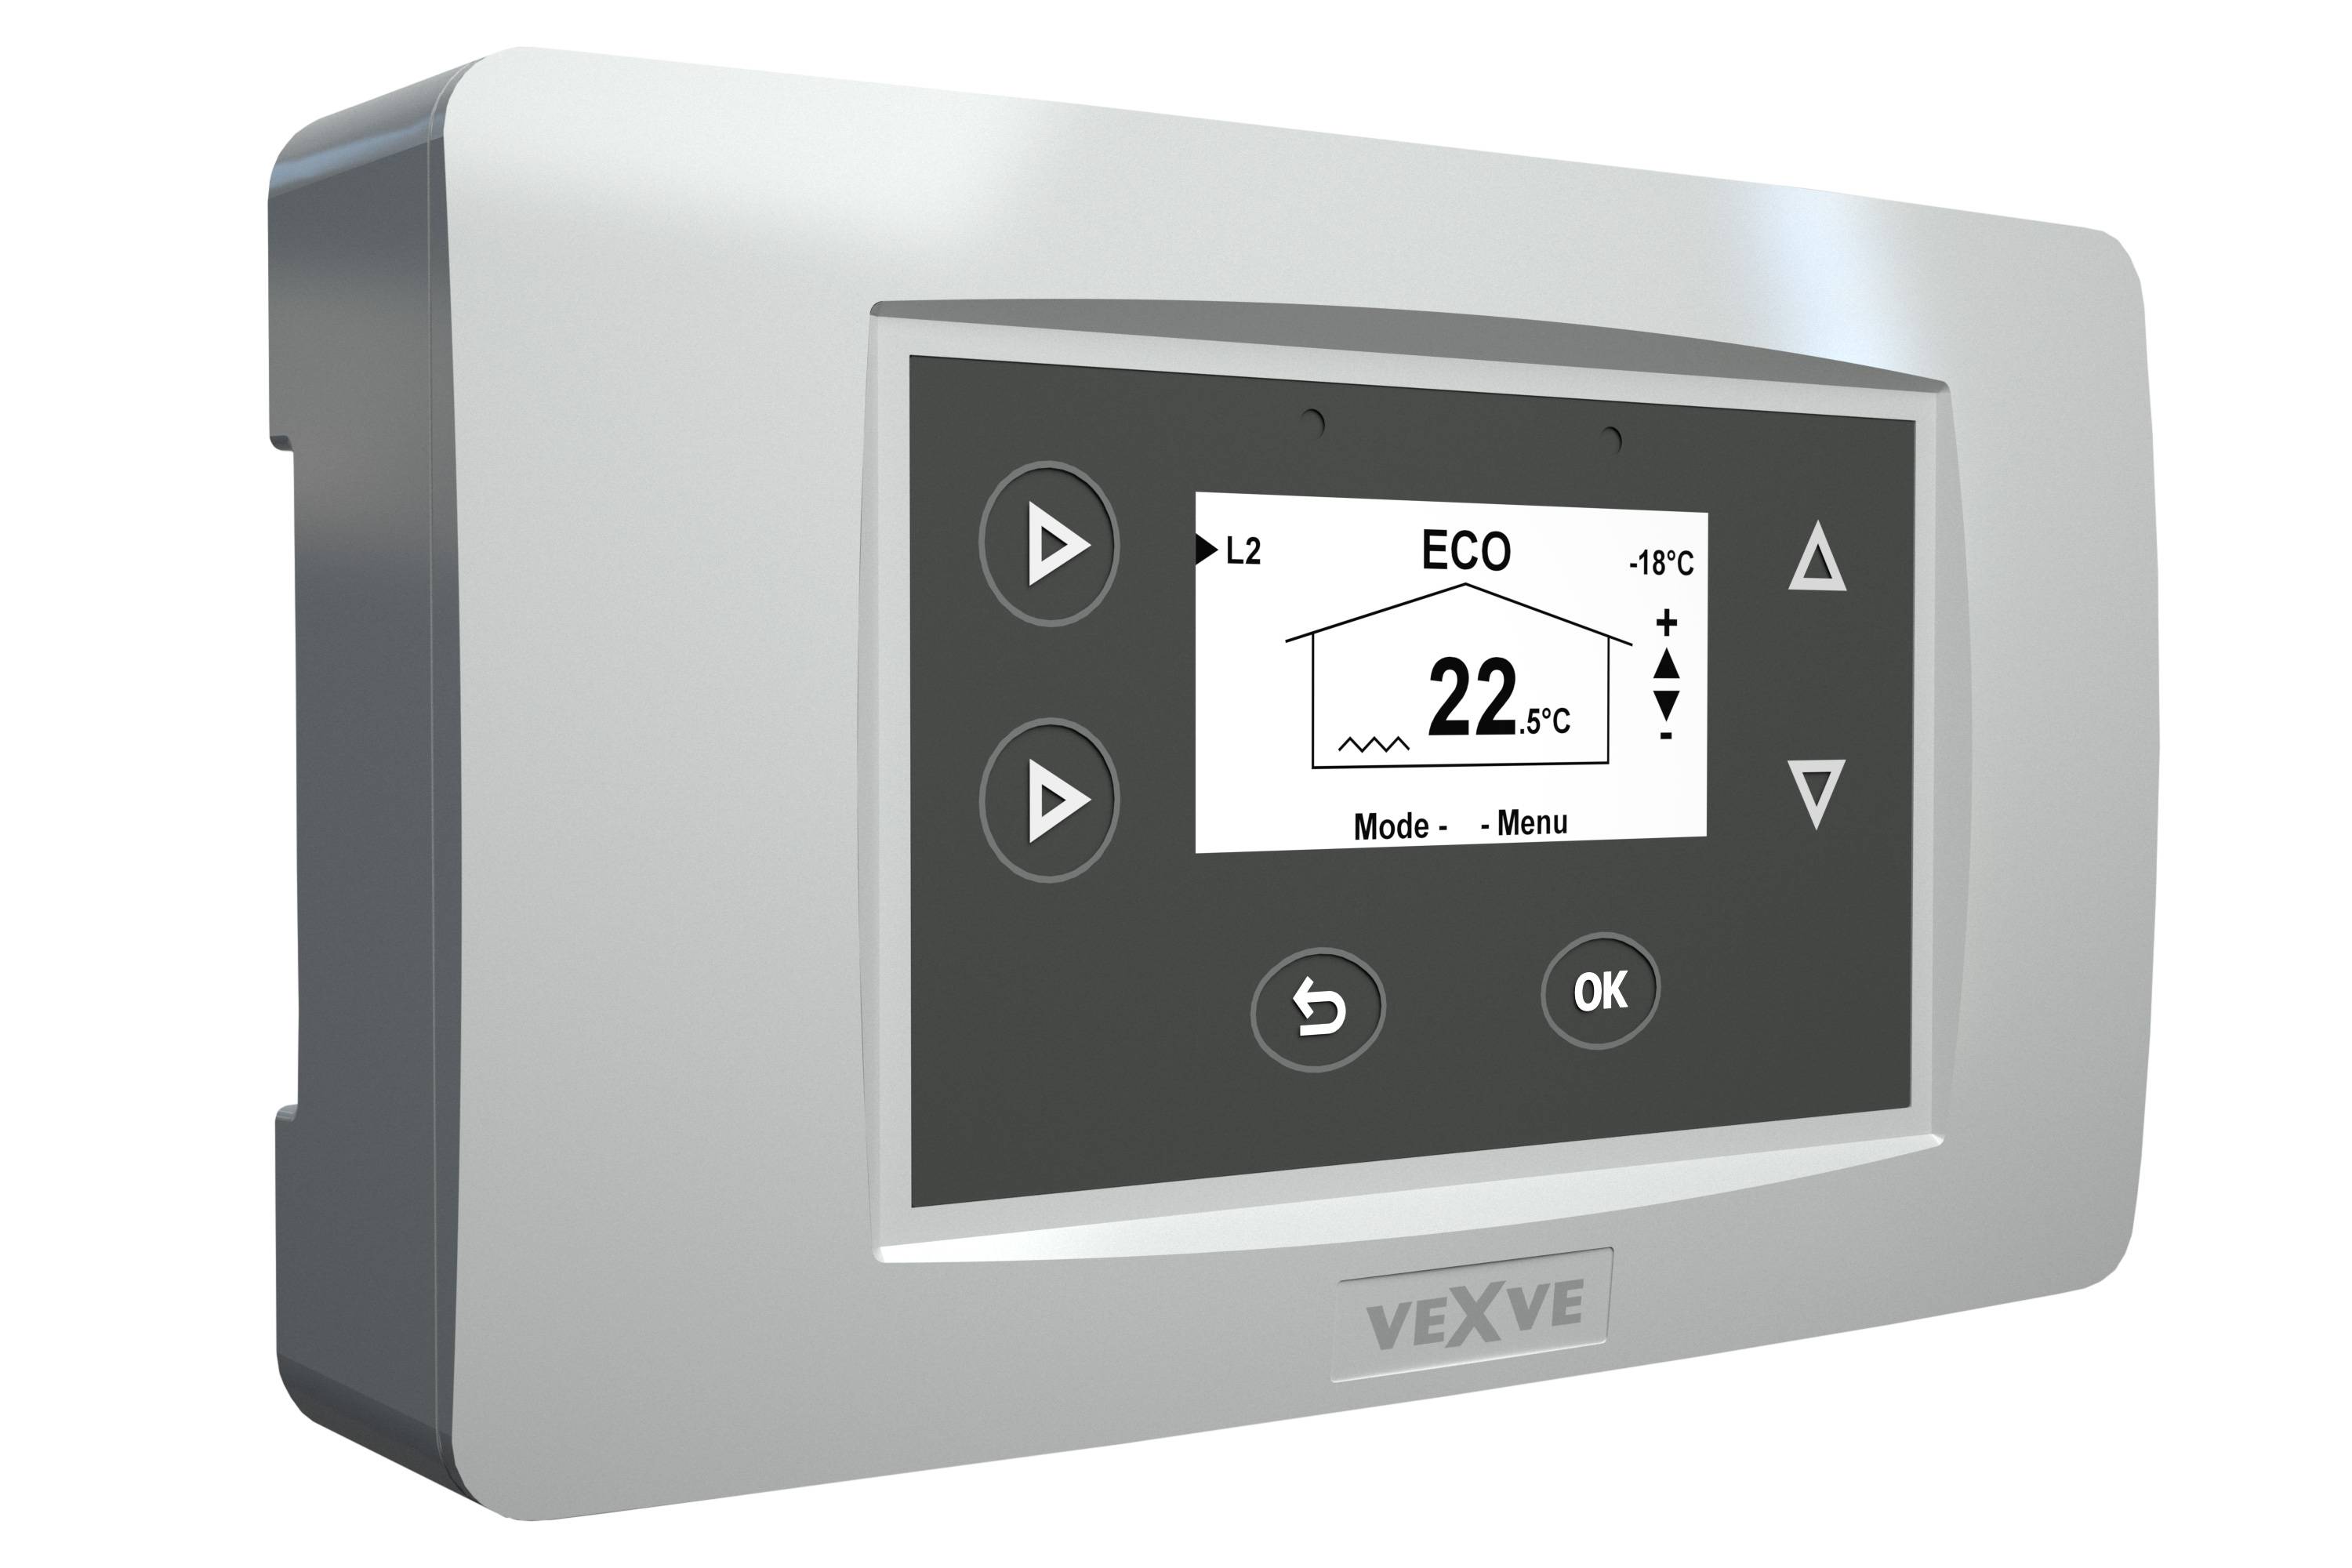 Регулятор температуры воды в системе отопления: типы приборов, как своими руками смонтировать термостат